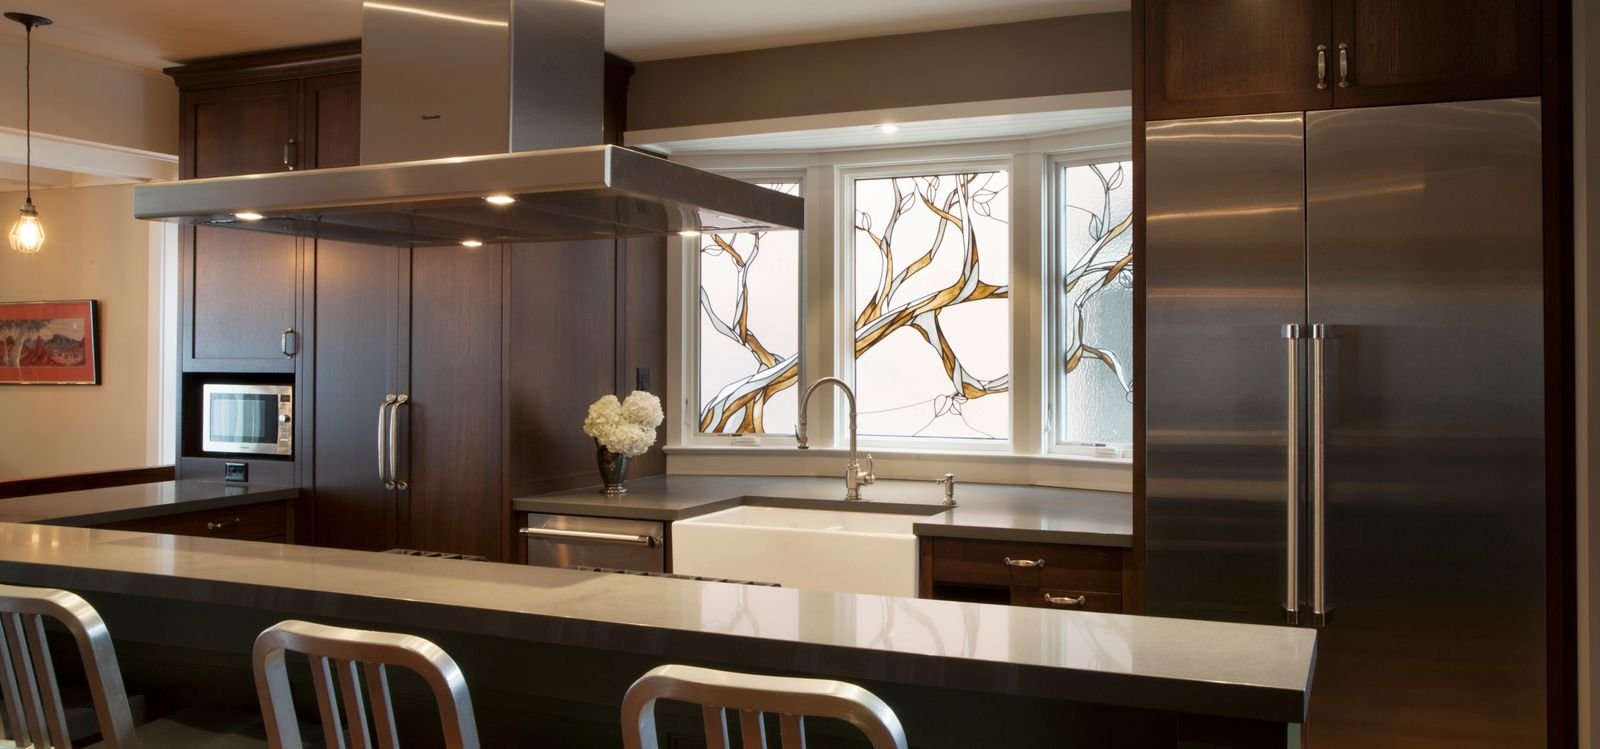 toronto luxury kitchen renovation with island and hanging range hood